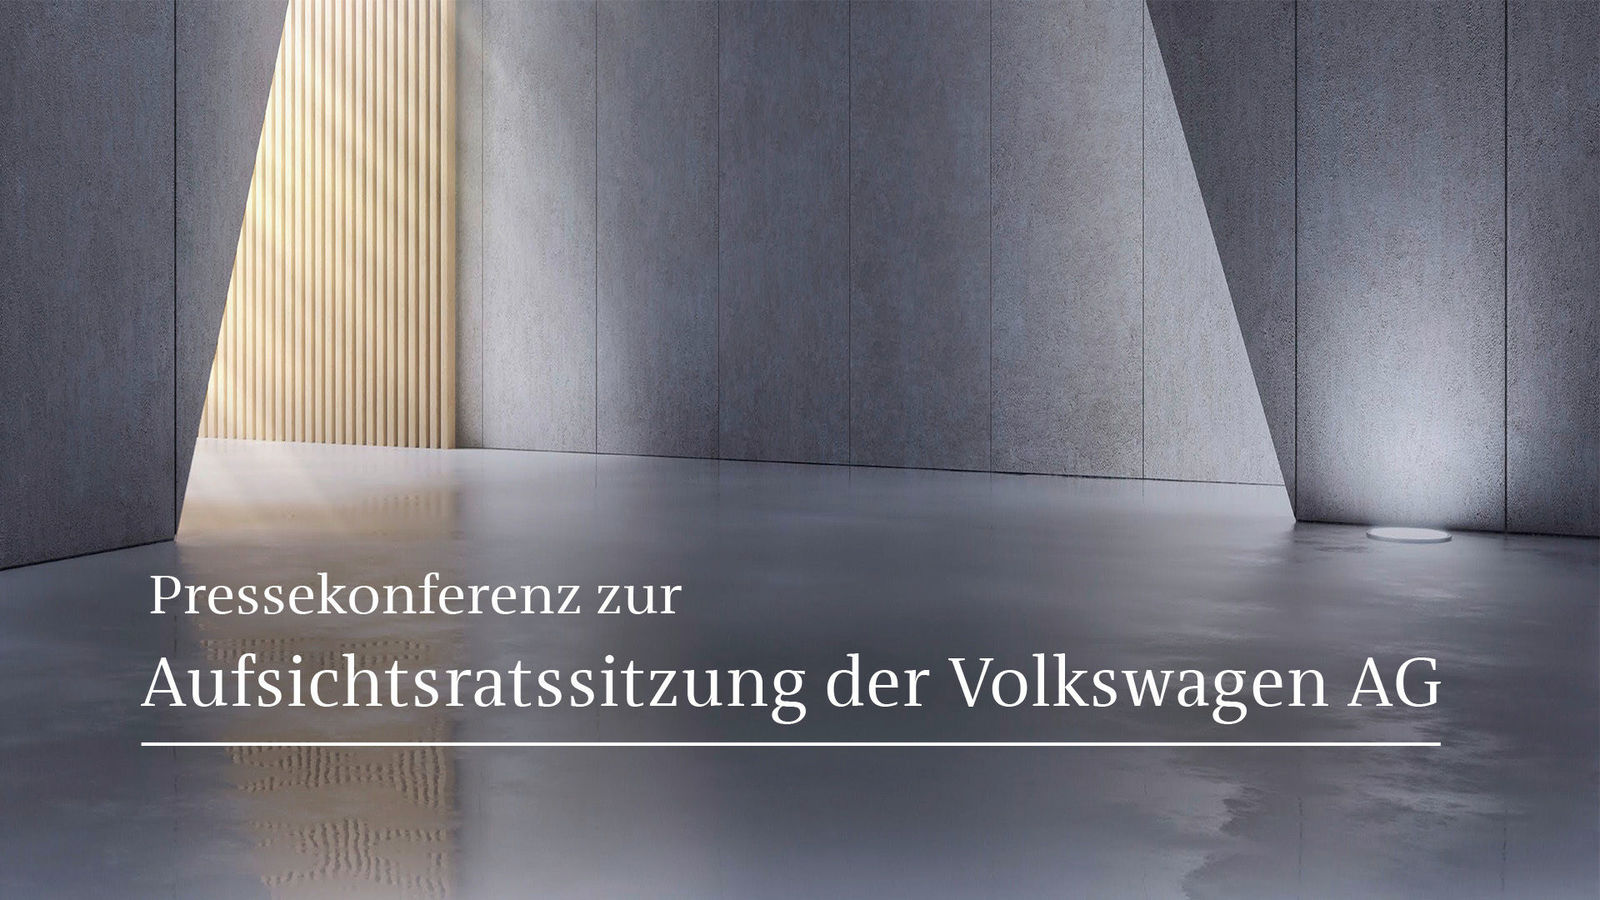 Pressekonferenz zur Aufsichtsratssitzung der Volkswagen AG